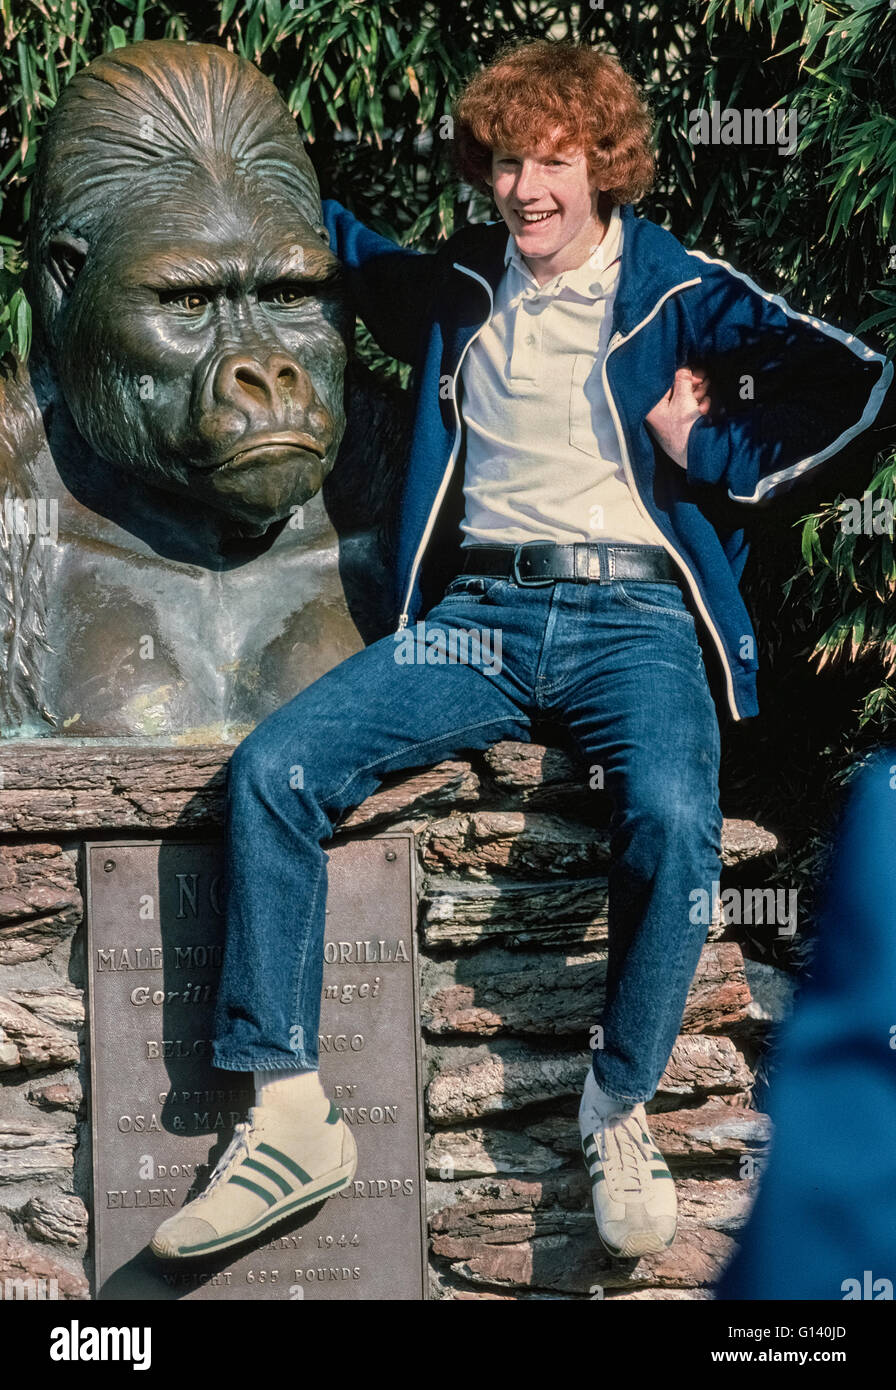 Ein Denkmal mit dem Stirnrunzelnd Gesicht eines männlichen Gorillas aus Afrika erscheint verärgert, die ein Teenager mit einer Hand unter seine Achsel versucht, die Menschenaffen zu imitieren, bei einem Besuch der weltberühmten San Diego Zoo in San Diego, Kalifornien, USA. Die Bronzeskulptur ist eine Hommage an Ngagi, einem östlichen Flachlandgorilla gefangen im damaligen Belgisch-Kongo und in den Zoo in 1931. Die 635-Pfund-Ape starb dort im Jahre 1944. Diese Büste geformten zwei Jahre vor Ngagis Tod war und ist nach wie vor ein beliebter Ort für Bilder in den 100 Hektar großen Zoo zu posieren, die Heimat von mehr als 3.500 seltenen und vom Aussterben bedrohte Tiere. Stockfoto